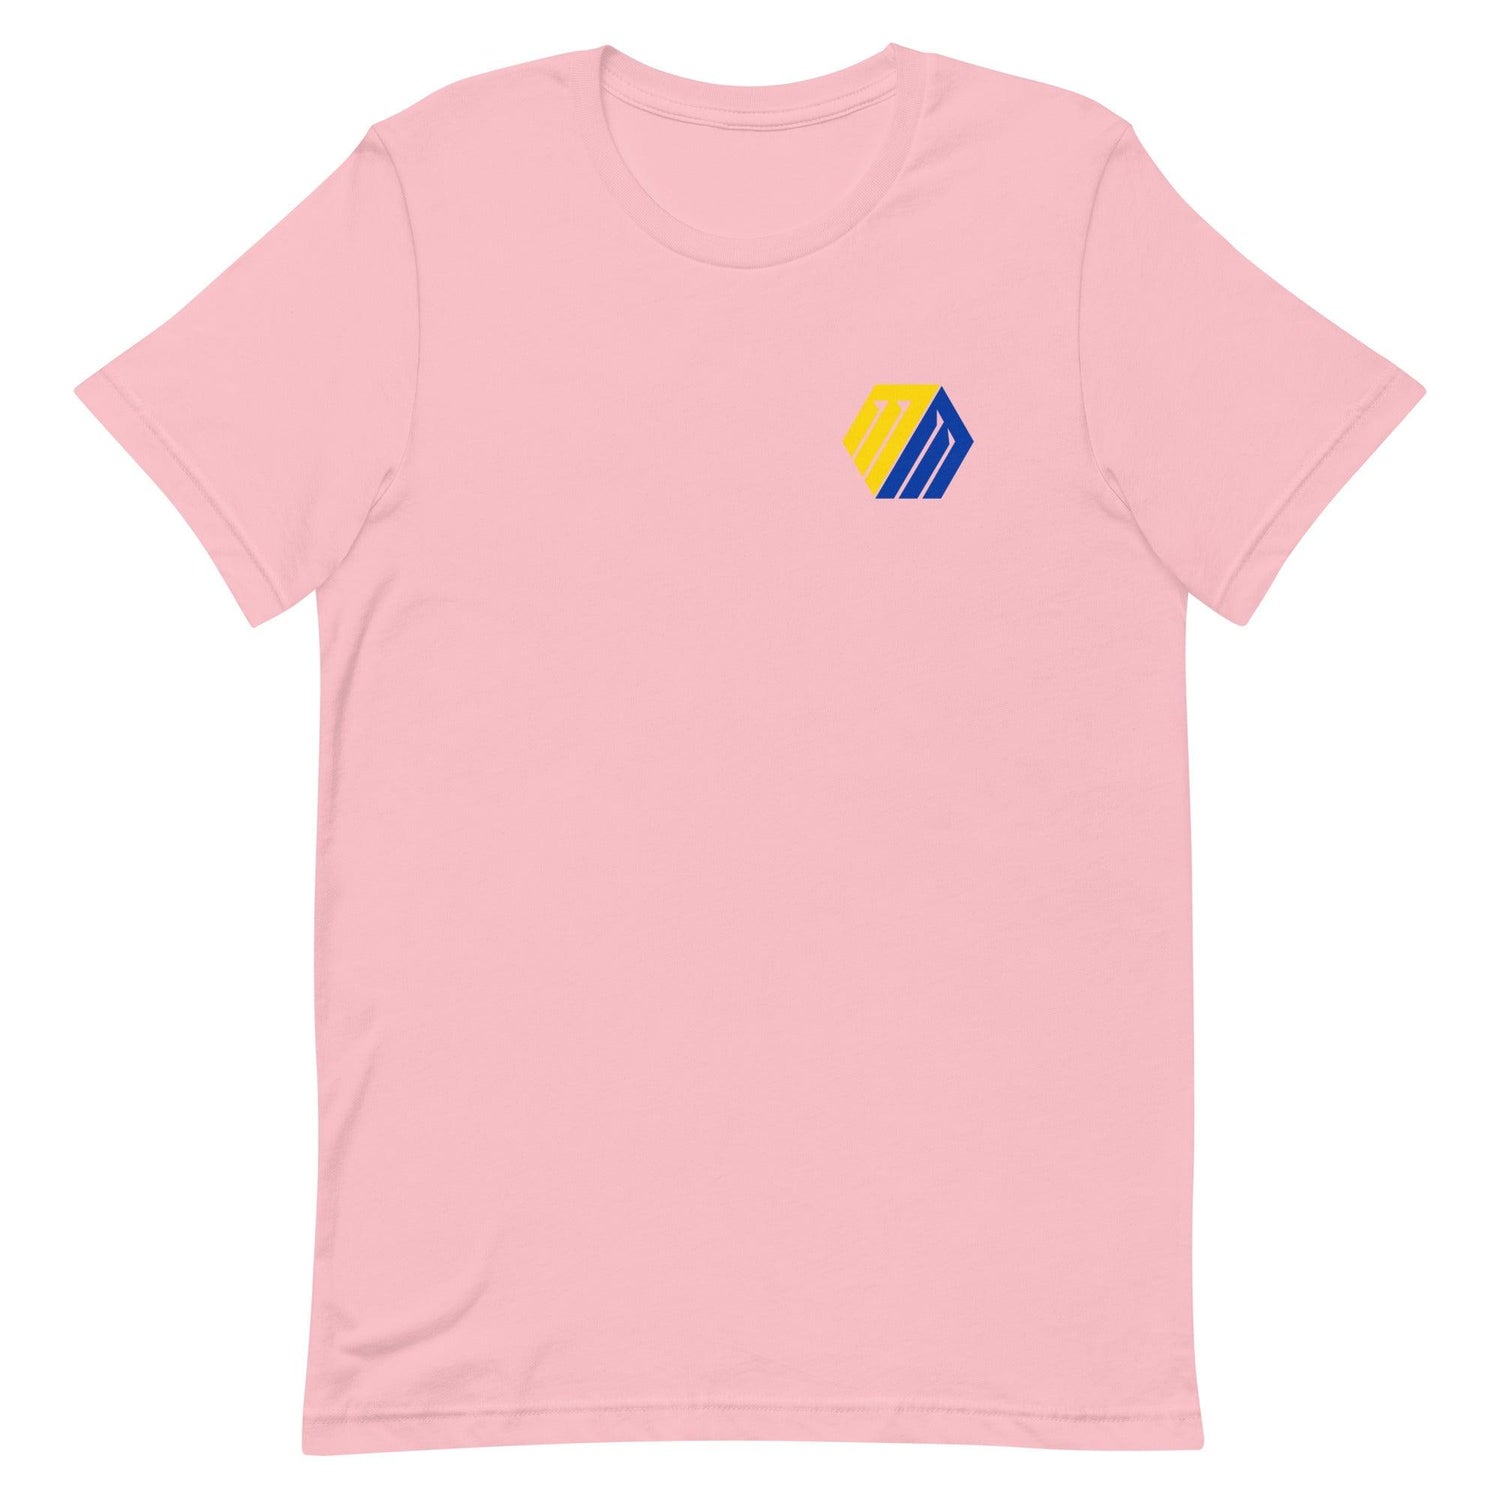 Matthew Mors "Essential" t-shirt - Fan Arch